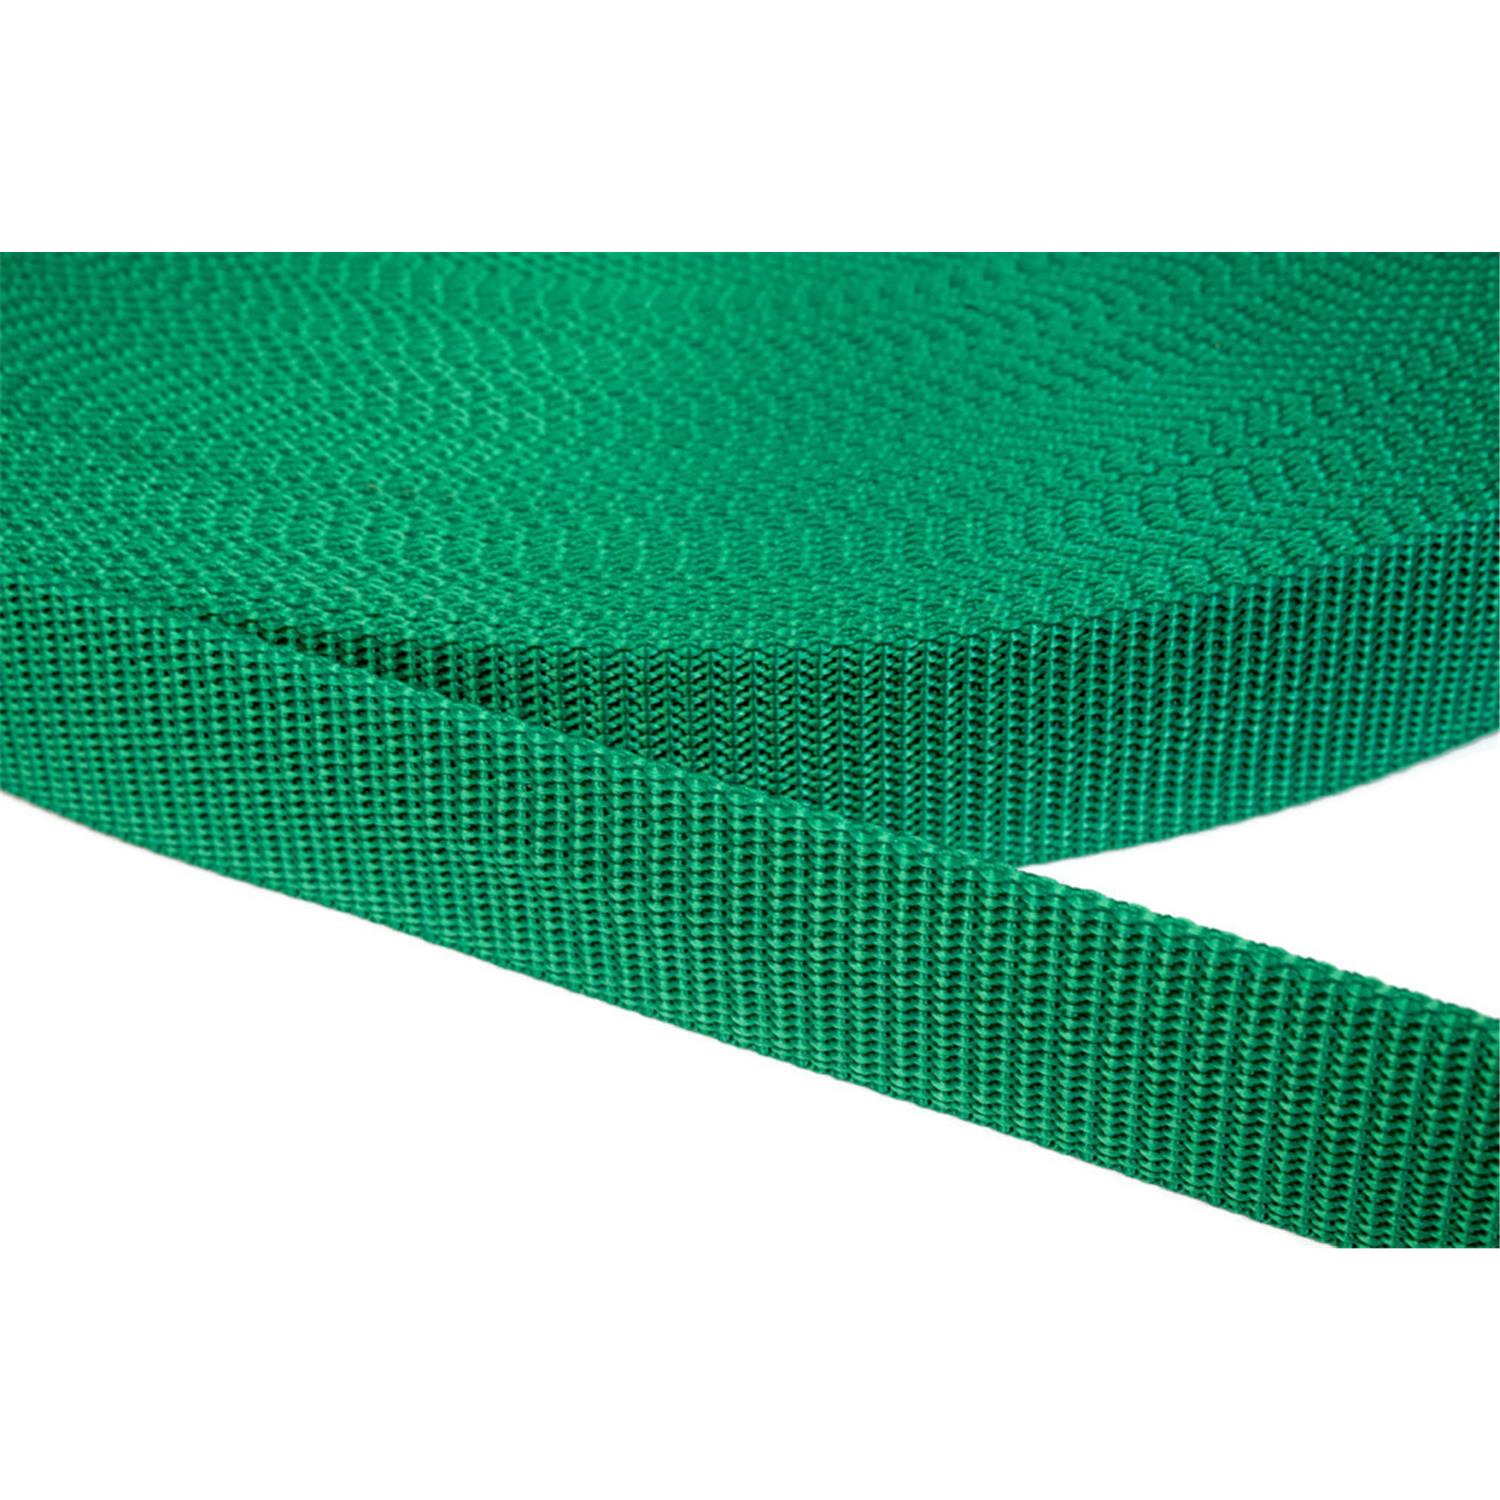 Gurtband 20mm breit aus Polypropylen in 41 Farben 34 - grün 06 Meter